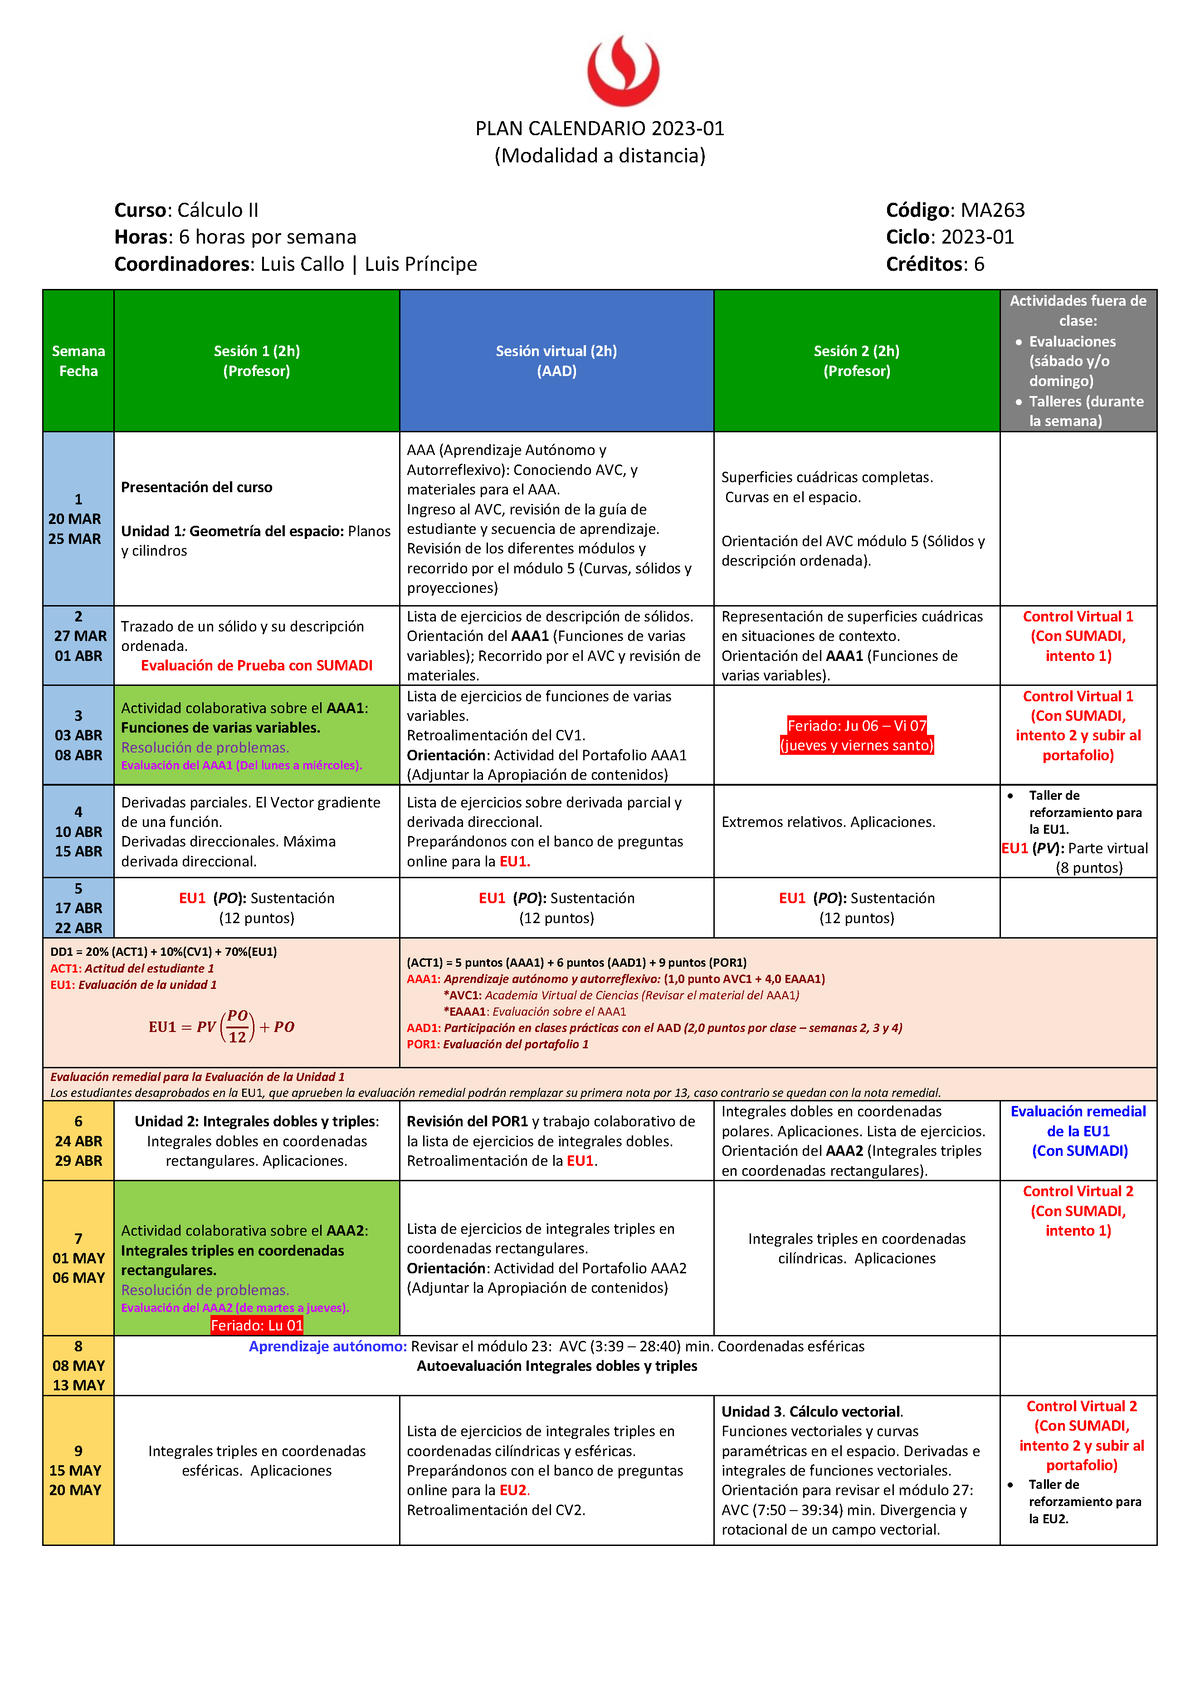 MA263 Plan calendario - Modalidad virtual - Cálculo 2 - UPC - Studocu